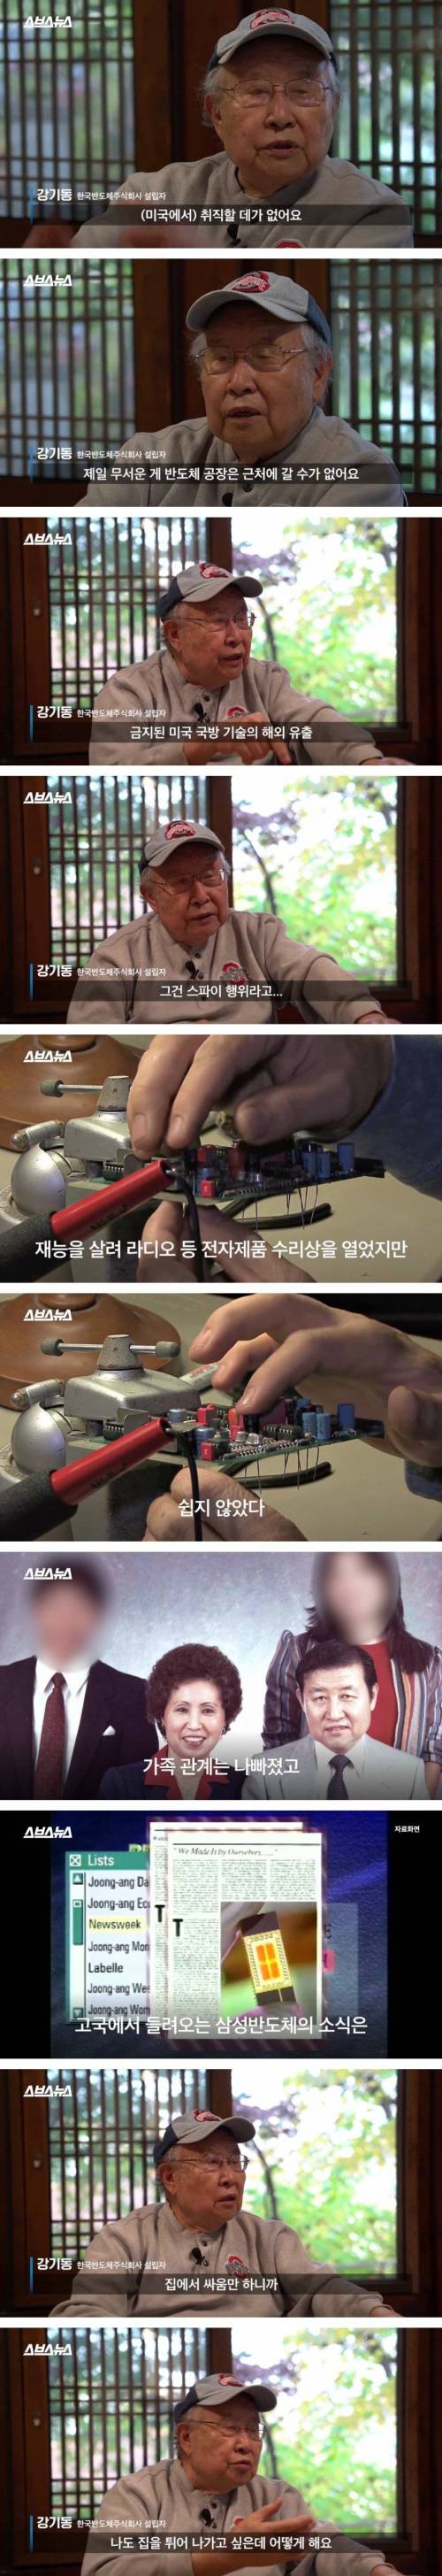 [스압] 한국 최초로 반도체를 만든 사람.jpg